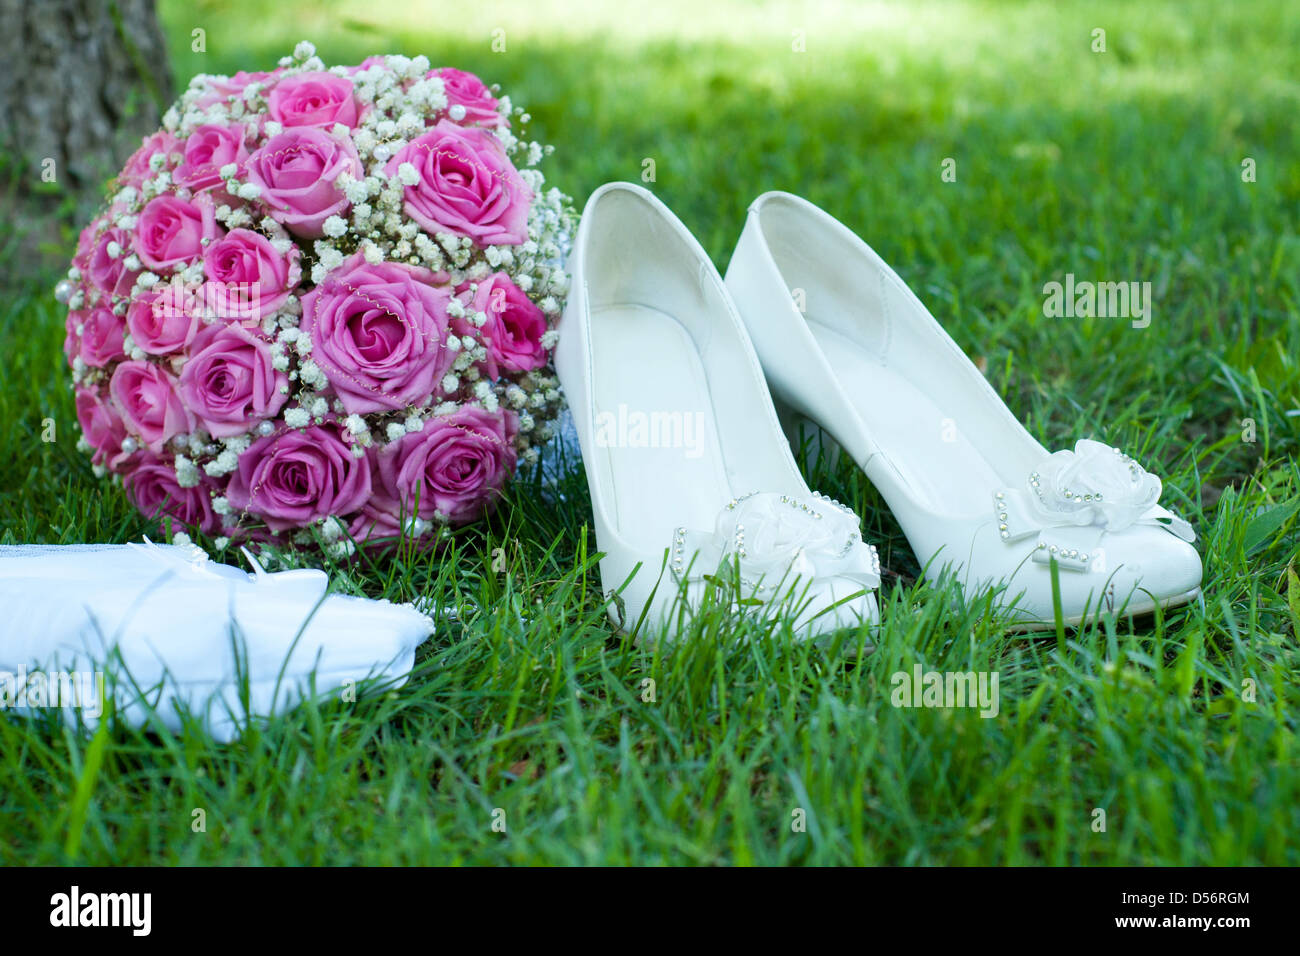 weiße Schuhe, rosa Strauß aus Rosen und eine schöne Handtasche der Braut  auf einem grünen Rasen Stockfotografie - Alamy